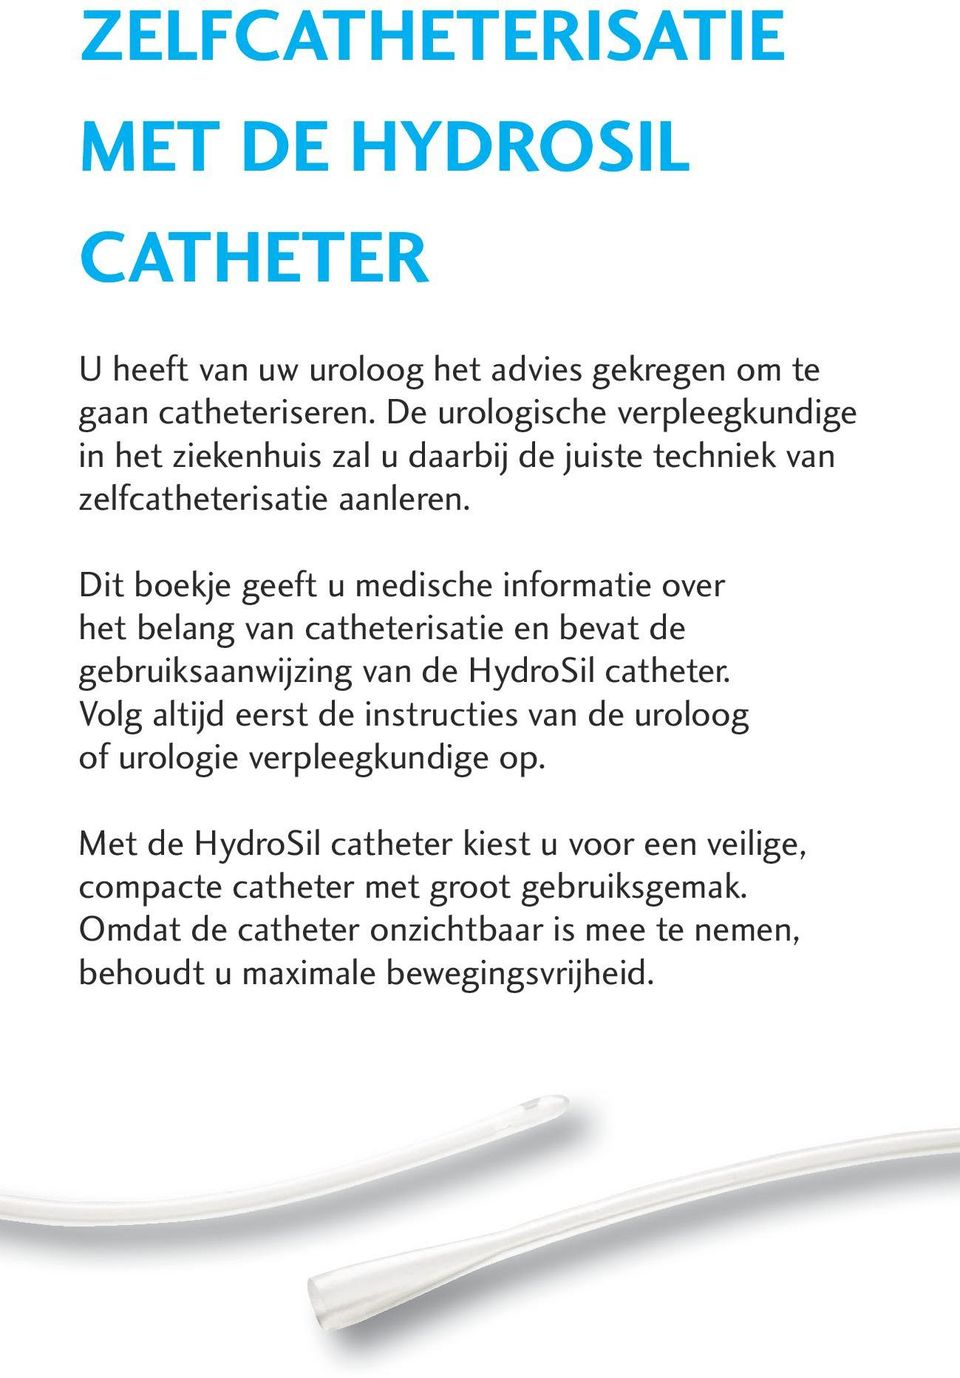 Dit boekje geeft u medische informatie over het belang van catheterisatie en bevat de gebruiksaanwijzing van de HydroSil catheter.